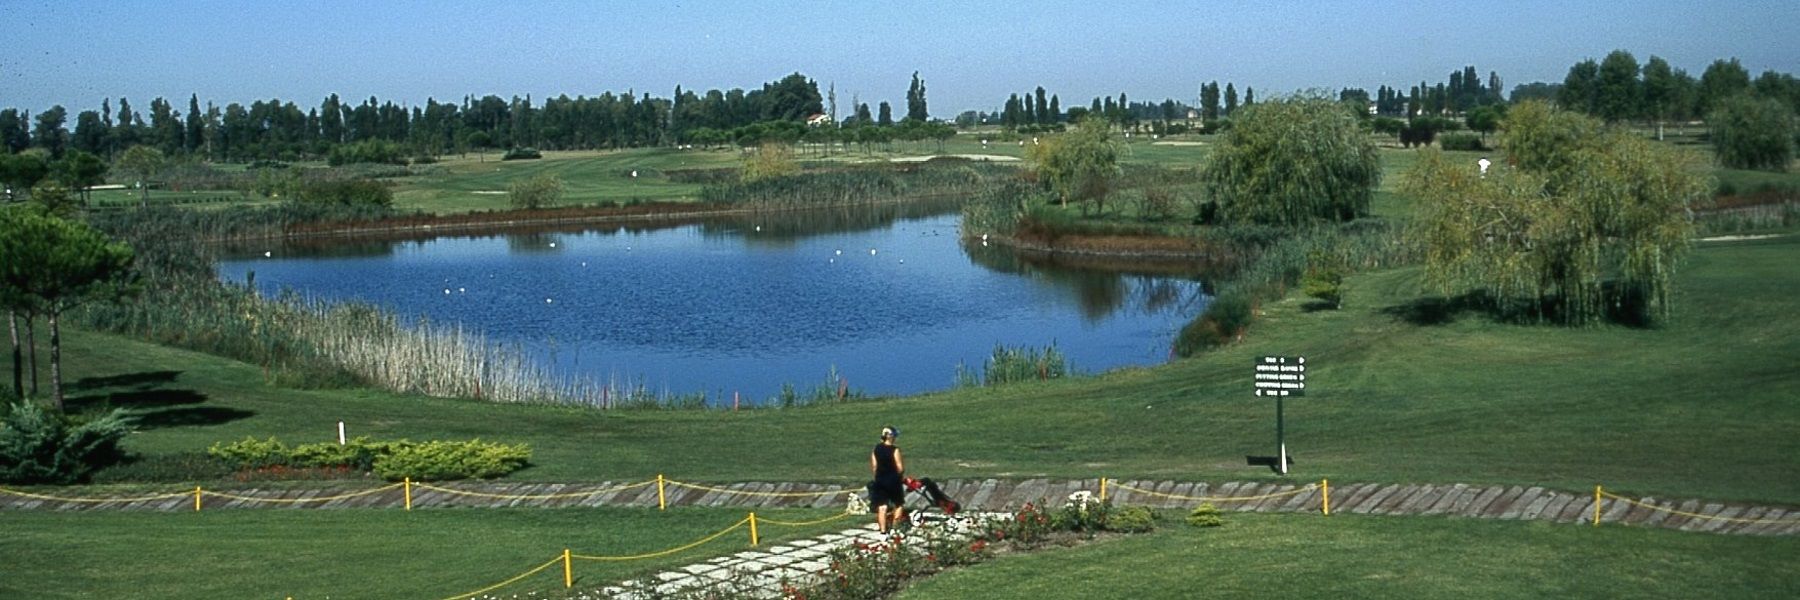 Adriatic Golf Club Cervia - Gli appuntamenti di maggio